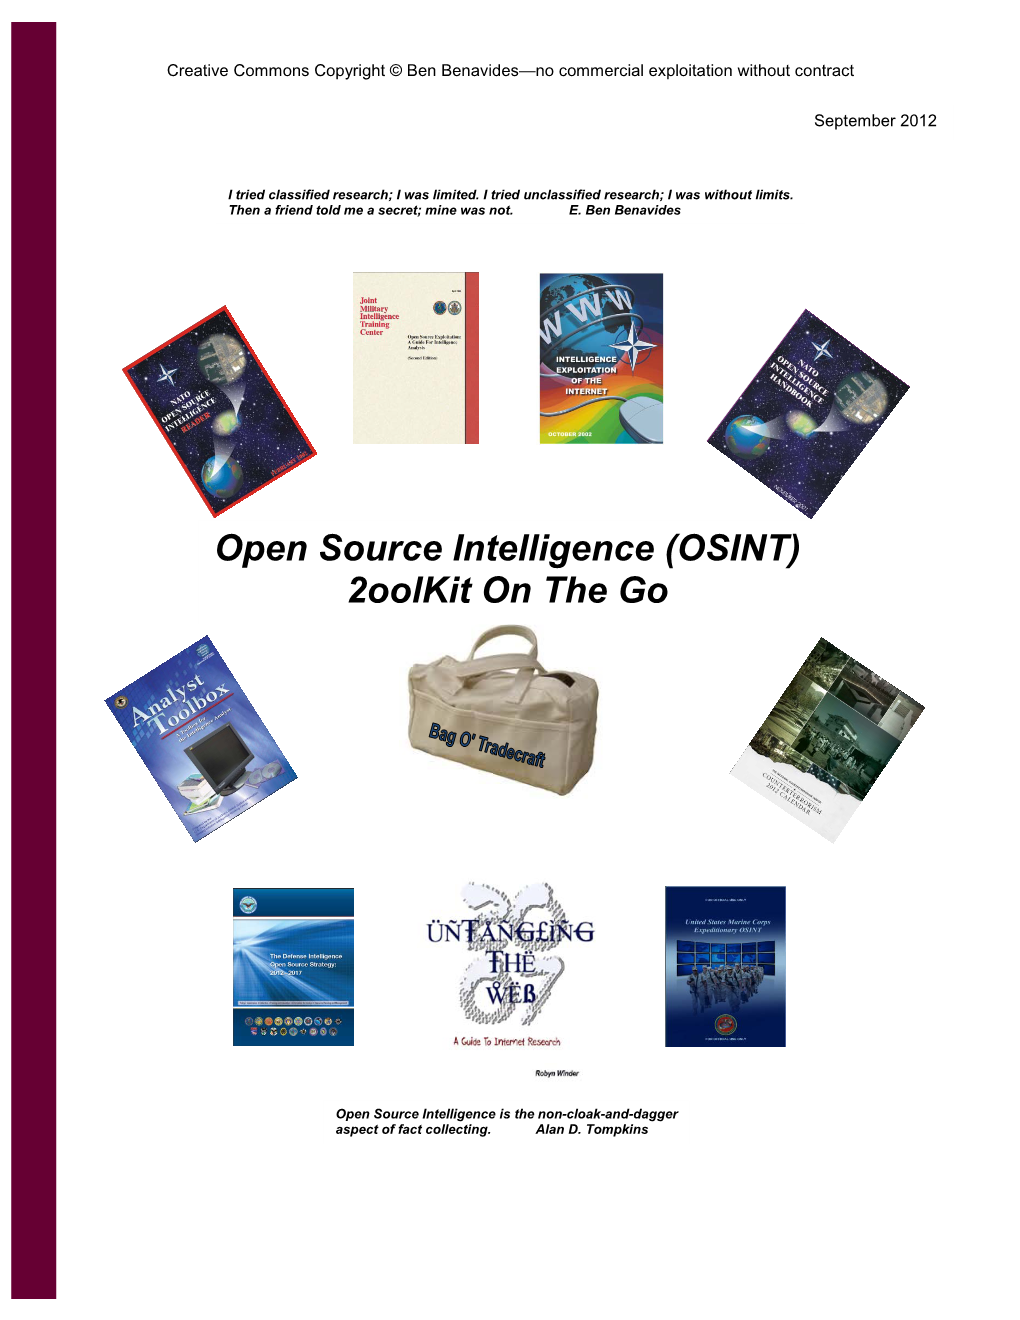 Open Source Intelligence (OSINT) 2Oolkit on the Go